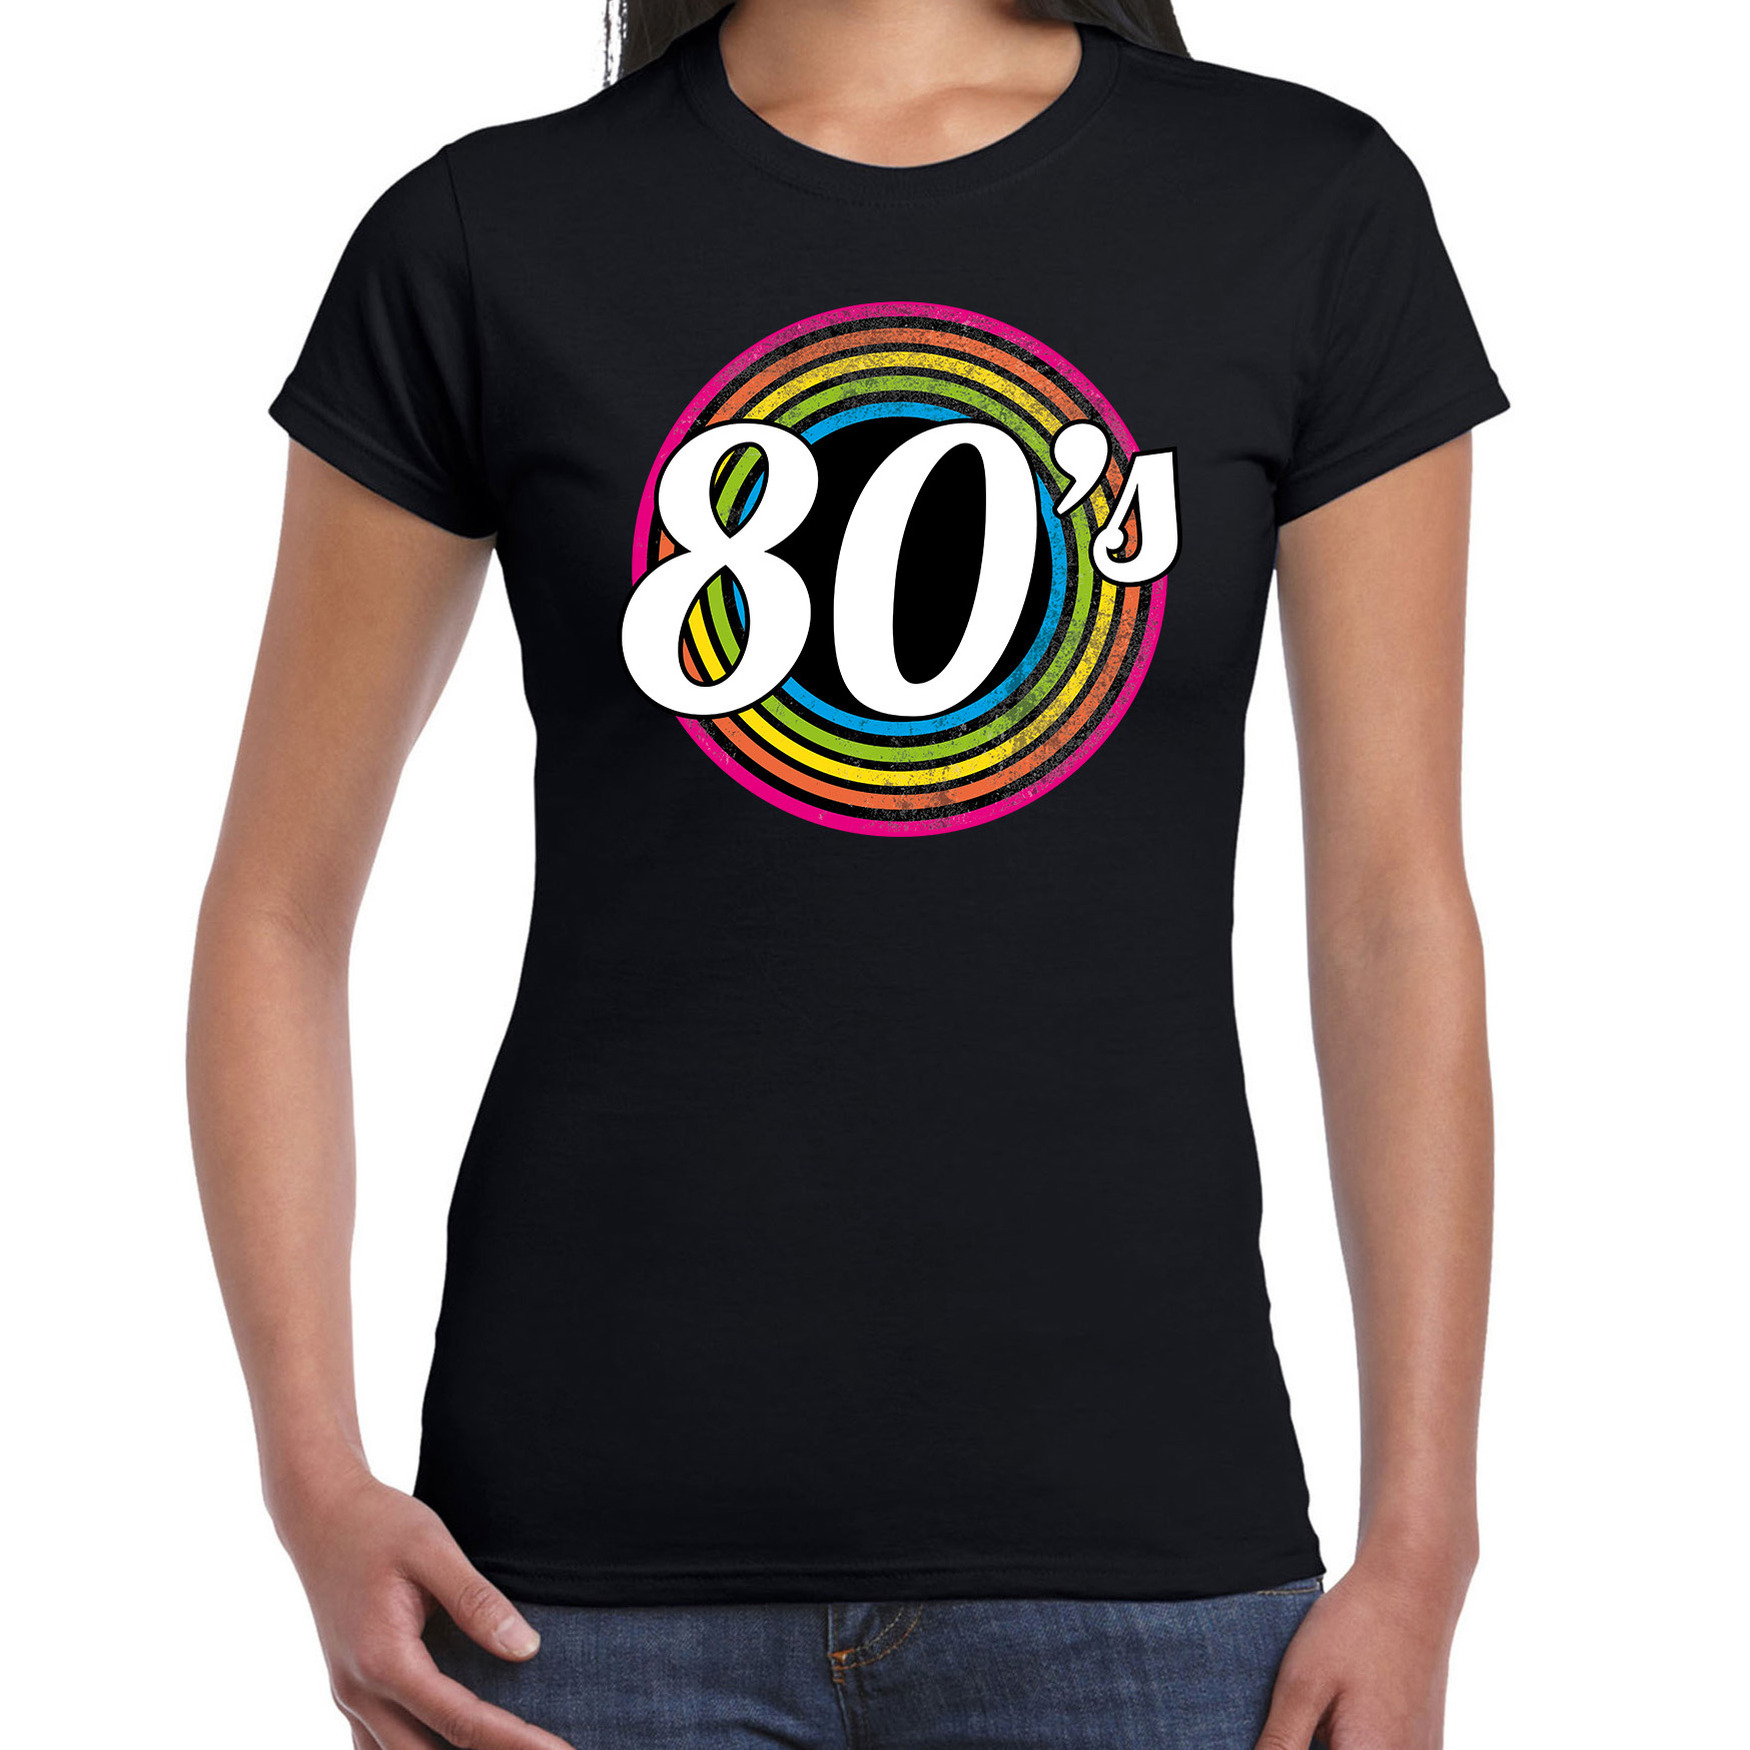 80s-eighties verkleed t-shirt zwart voor dames 70s, 80s party verkleed outfit